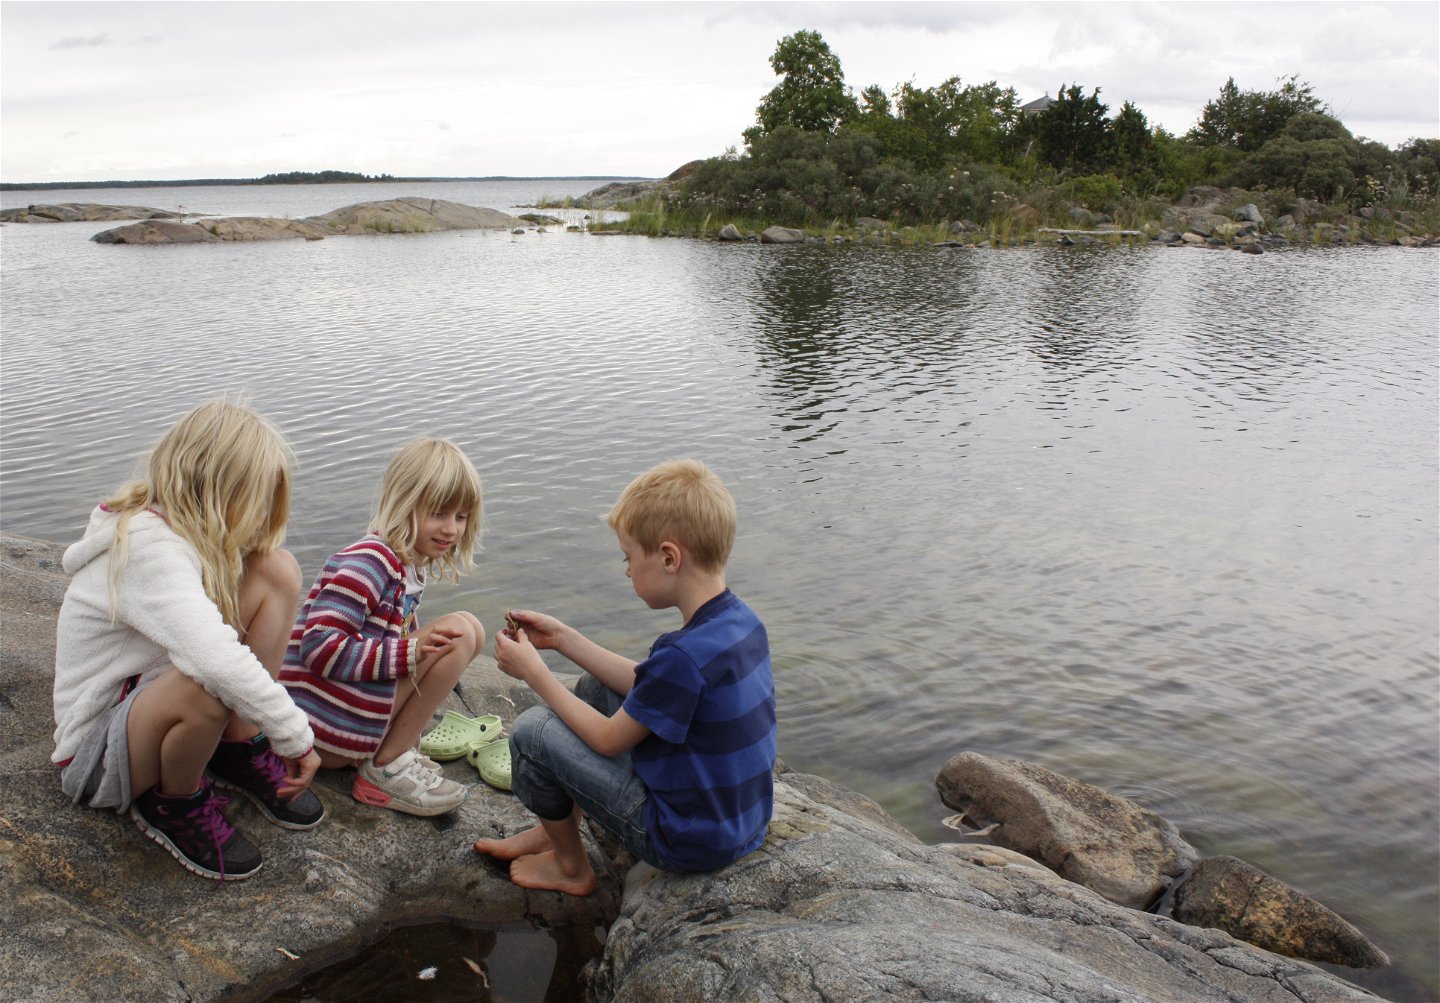 Tre barn sitter på en klipphäll och undersöker något som en av barnen håller i handen. I bakgrunden syns havet och en vik med buskar på.